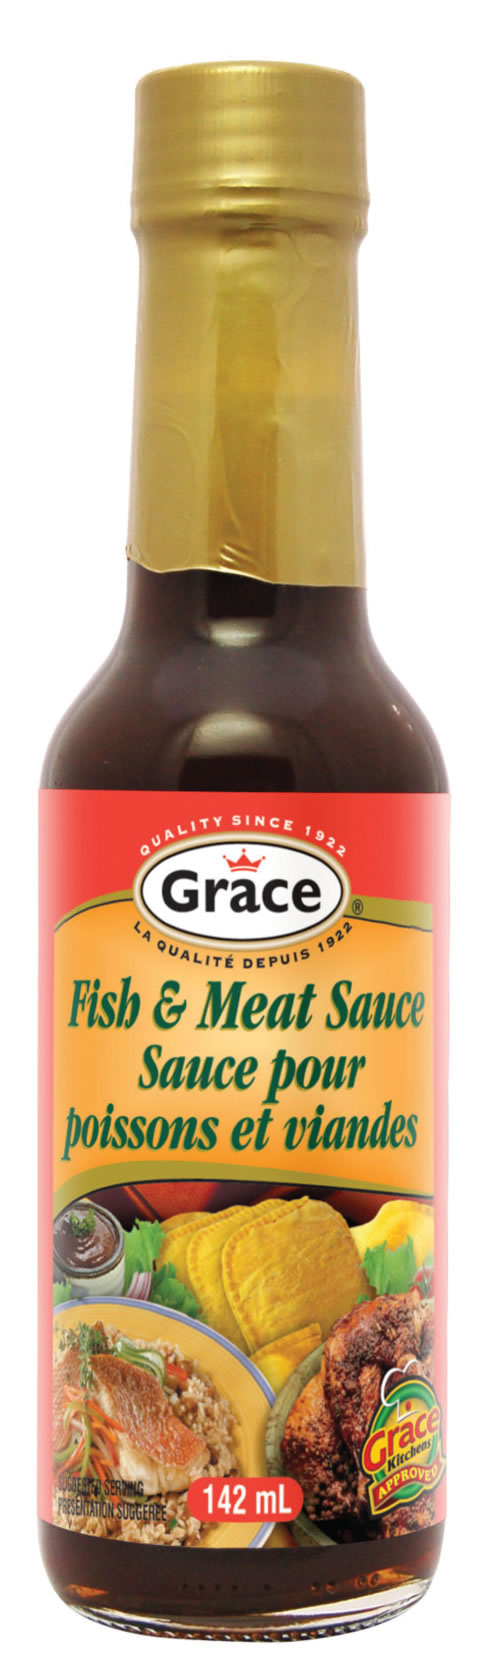 grace sauce fishmeat